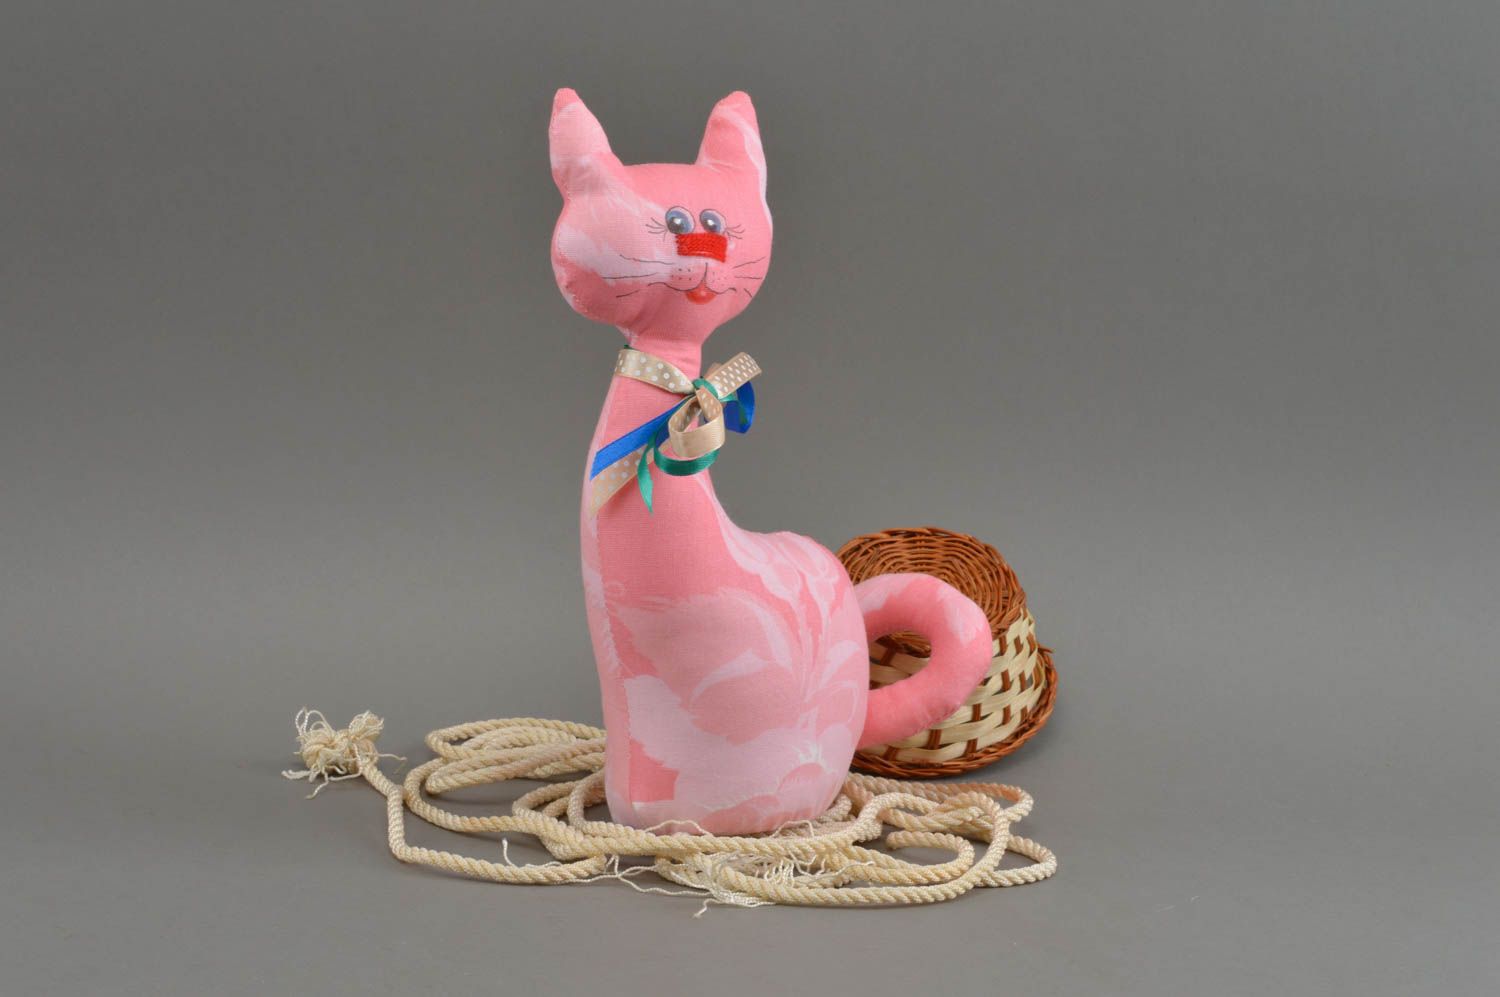 Тканевая игрушка в виде кошки небольшая розовая красивая милая ручной работы фото 1